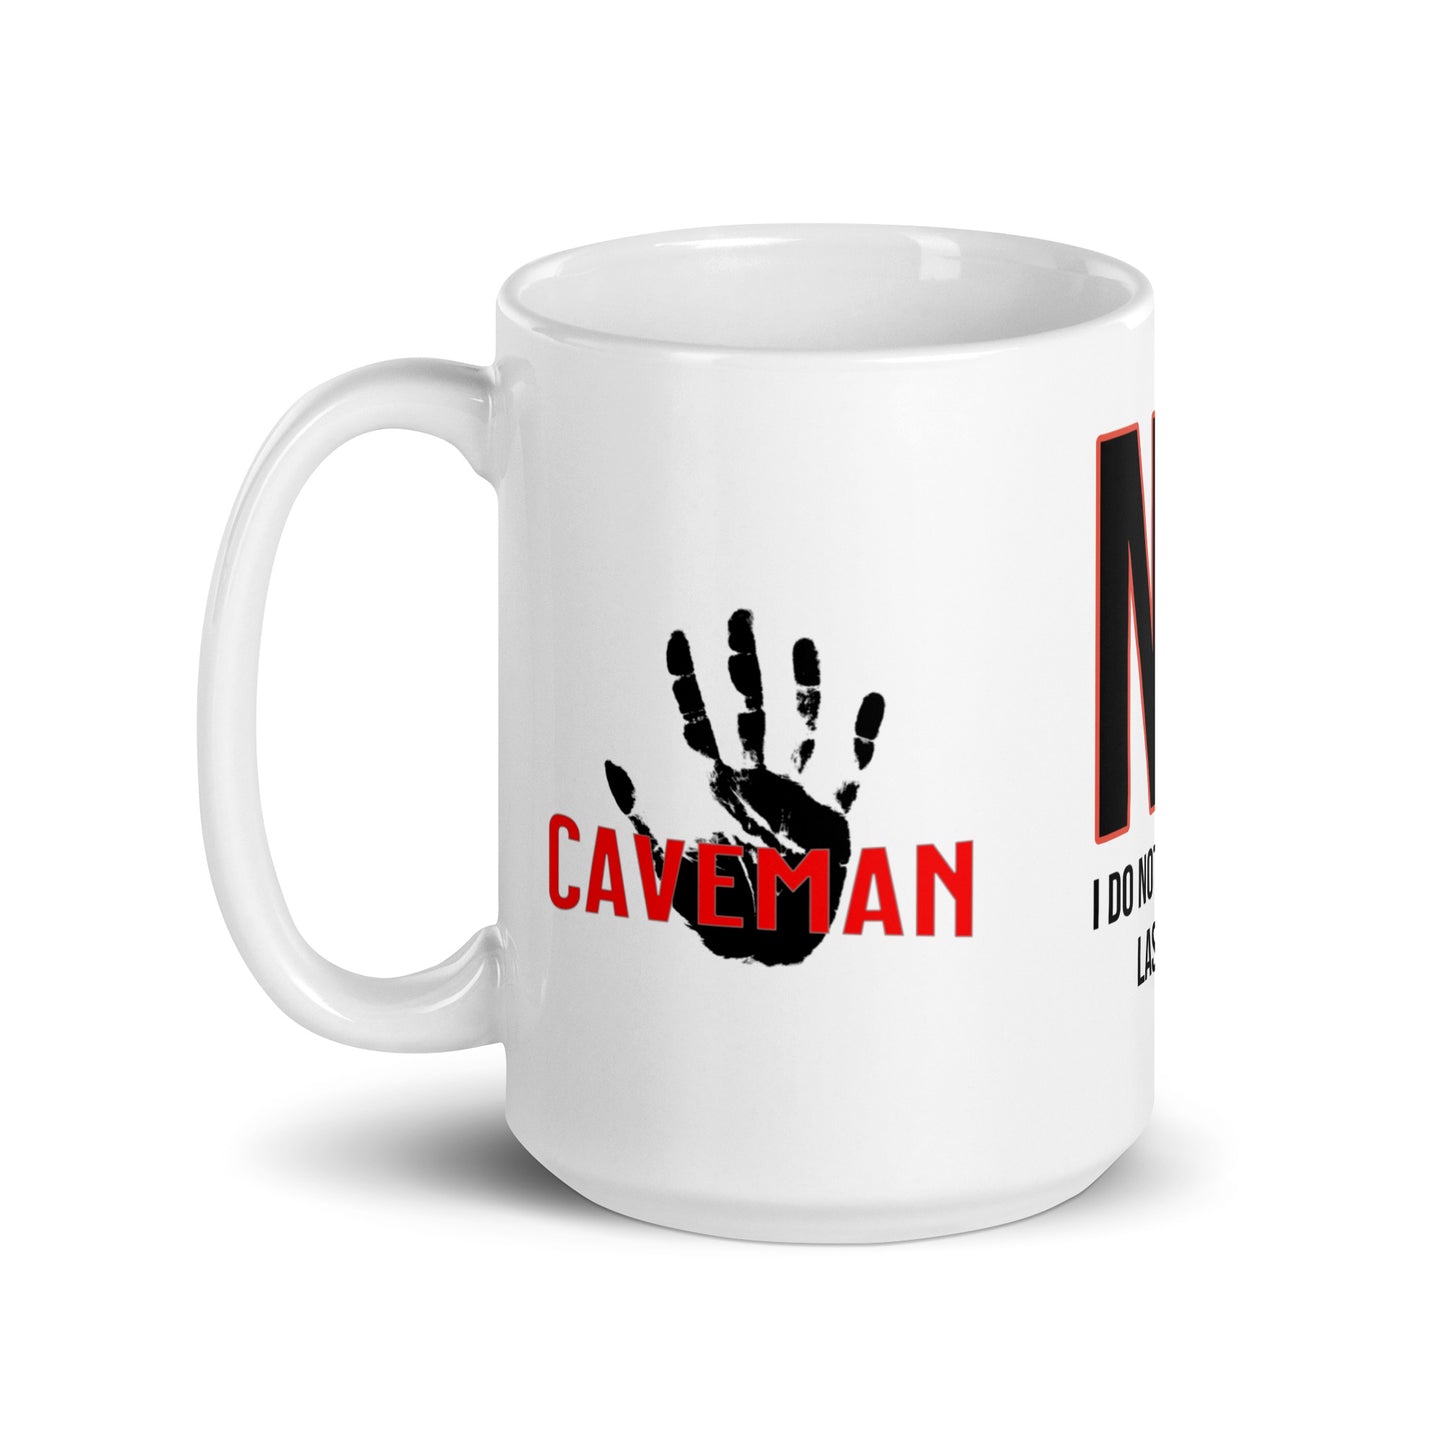 Caveman Originals - Who are you again? Mug